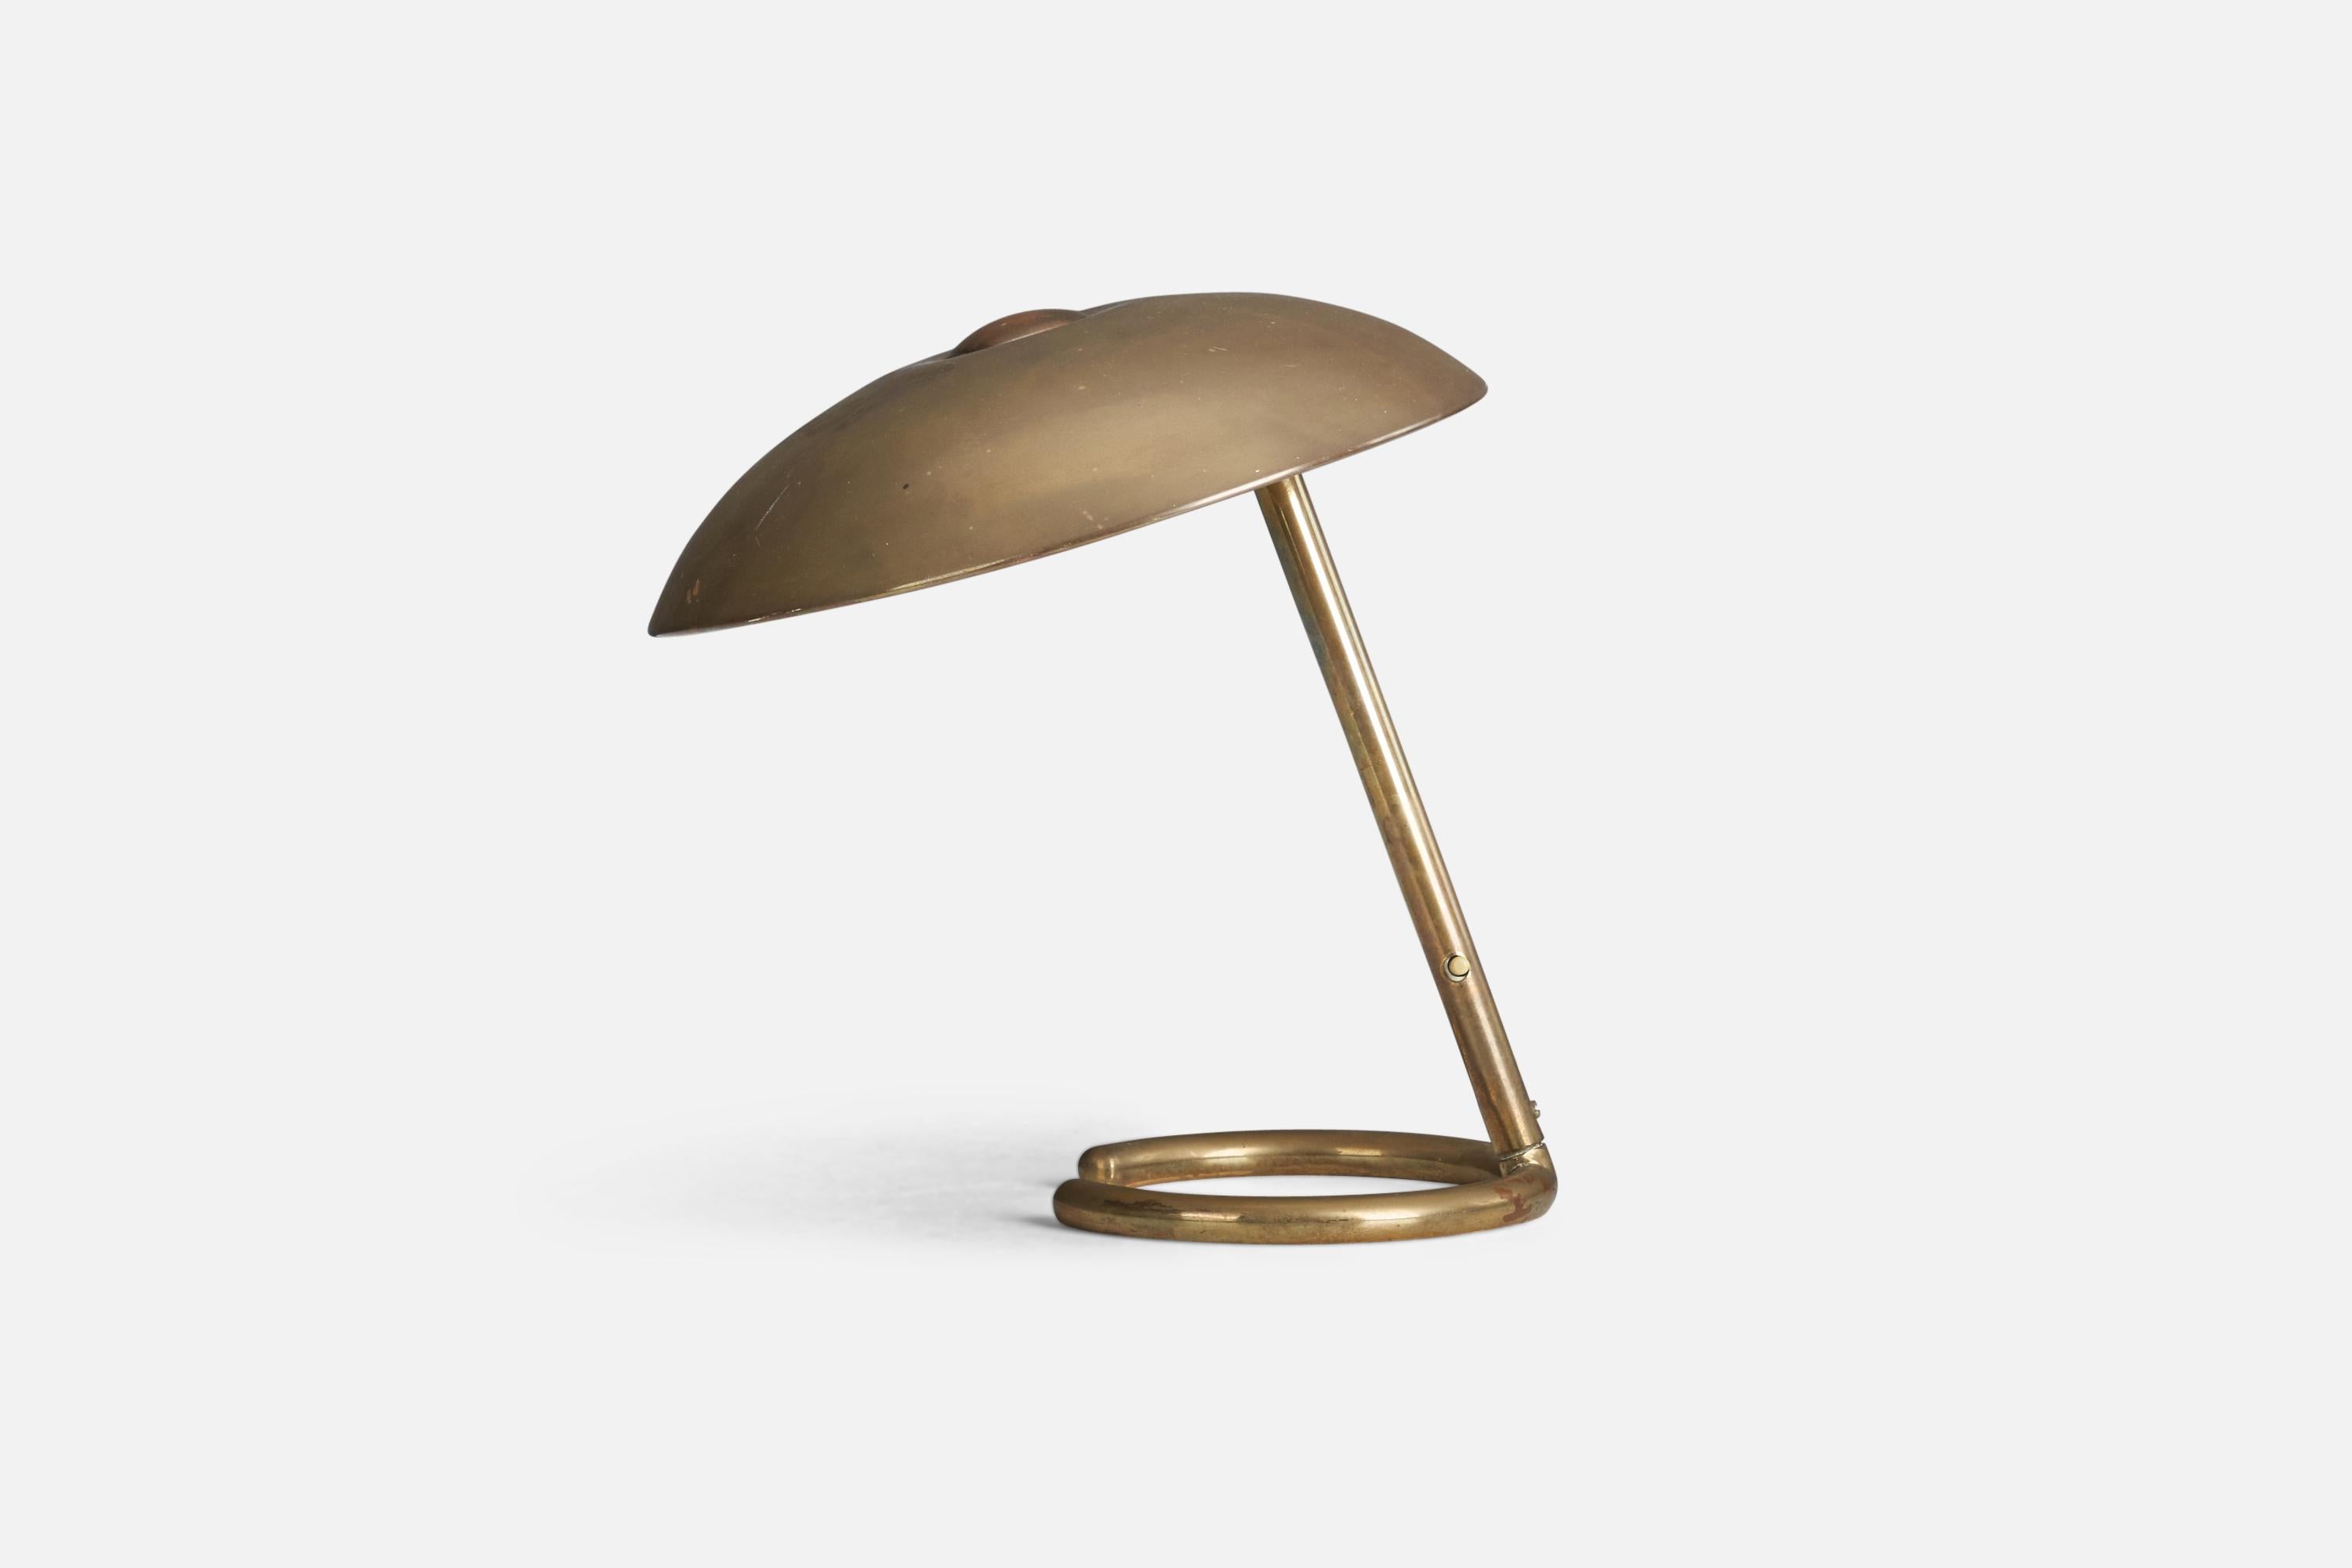 Eine Tischlampe aus Messing, entworfen und hergestellt von einem italienischen Designer, Italien, 1940er Jahre.

Fassung für E-14-Glühbirne.

Auf der Leuchte ist keine maximale Wattzahl angegeben.